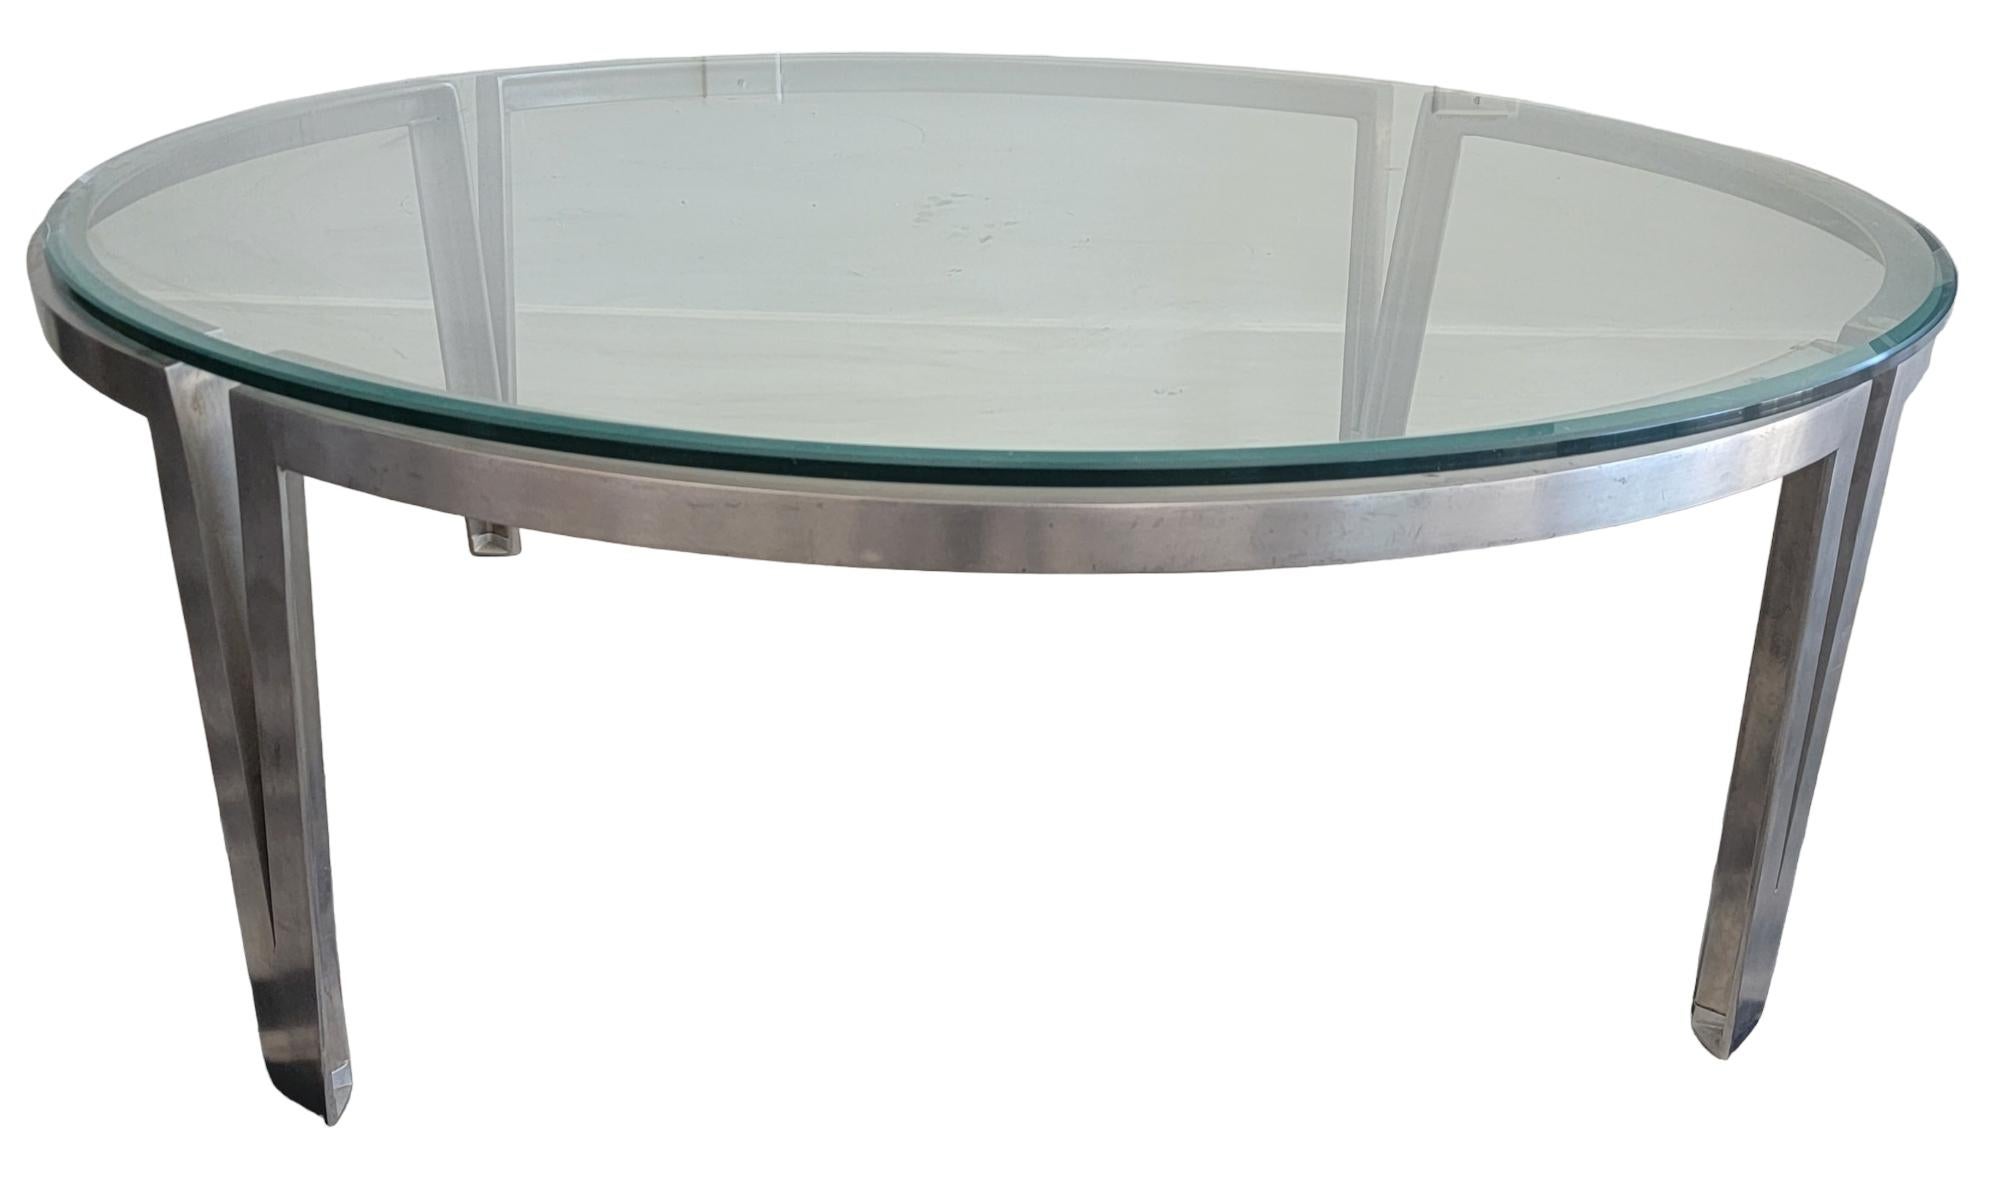 Table basse contemporaine italienne en métal et verre. Base très solide et robuste avec un plateau en verre épais. Le plateau en verre est biseauté. Le verre est amovible.

Mesure environ 44 x16